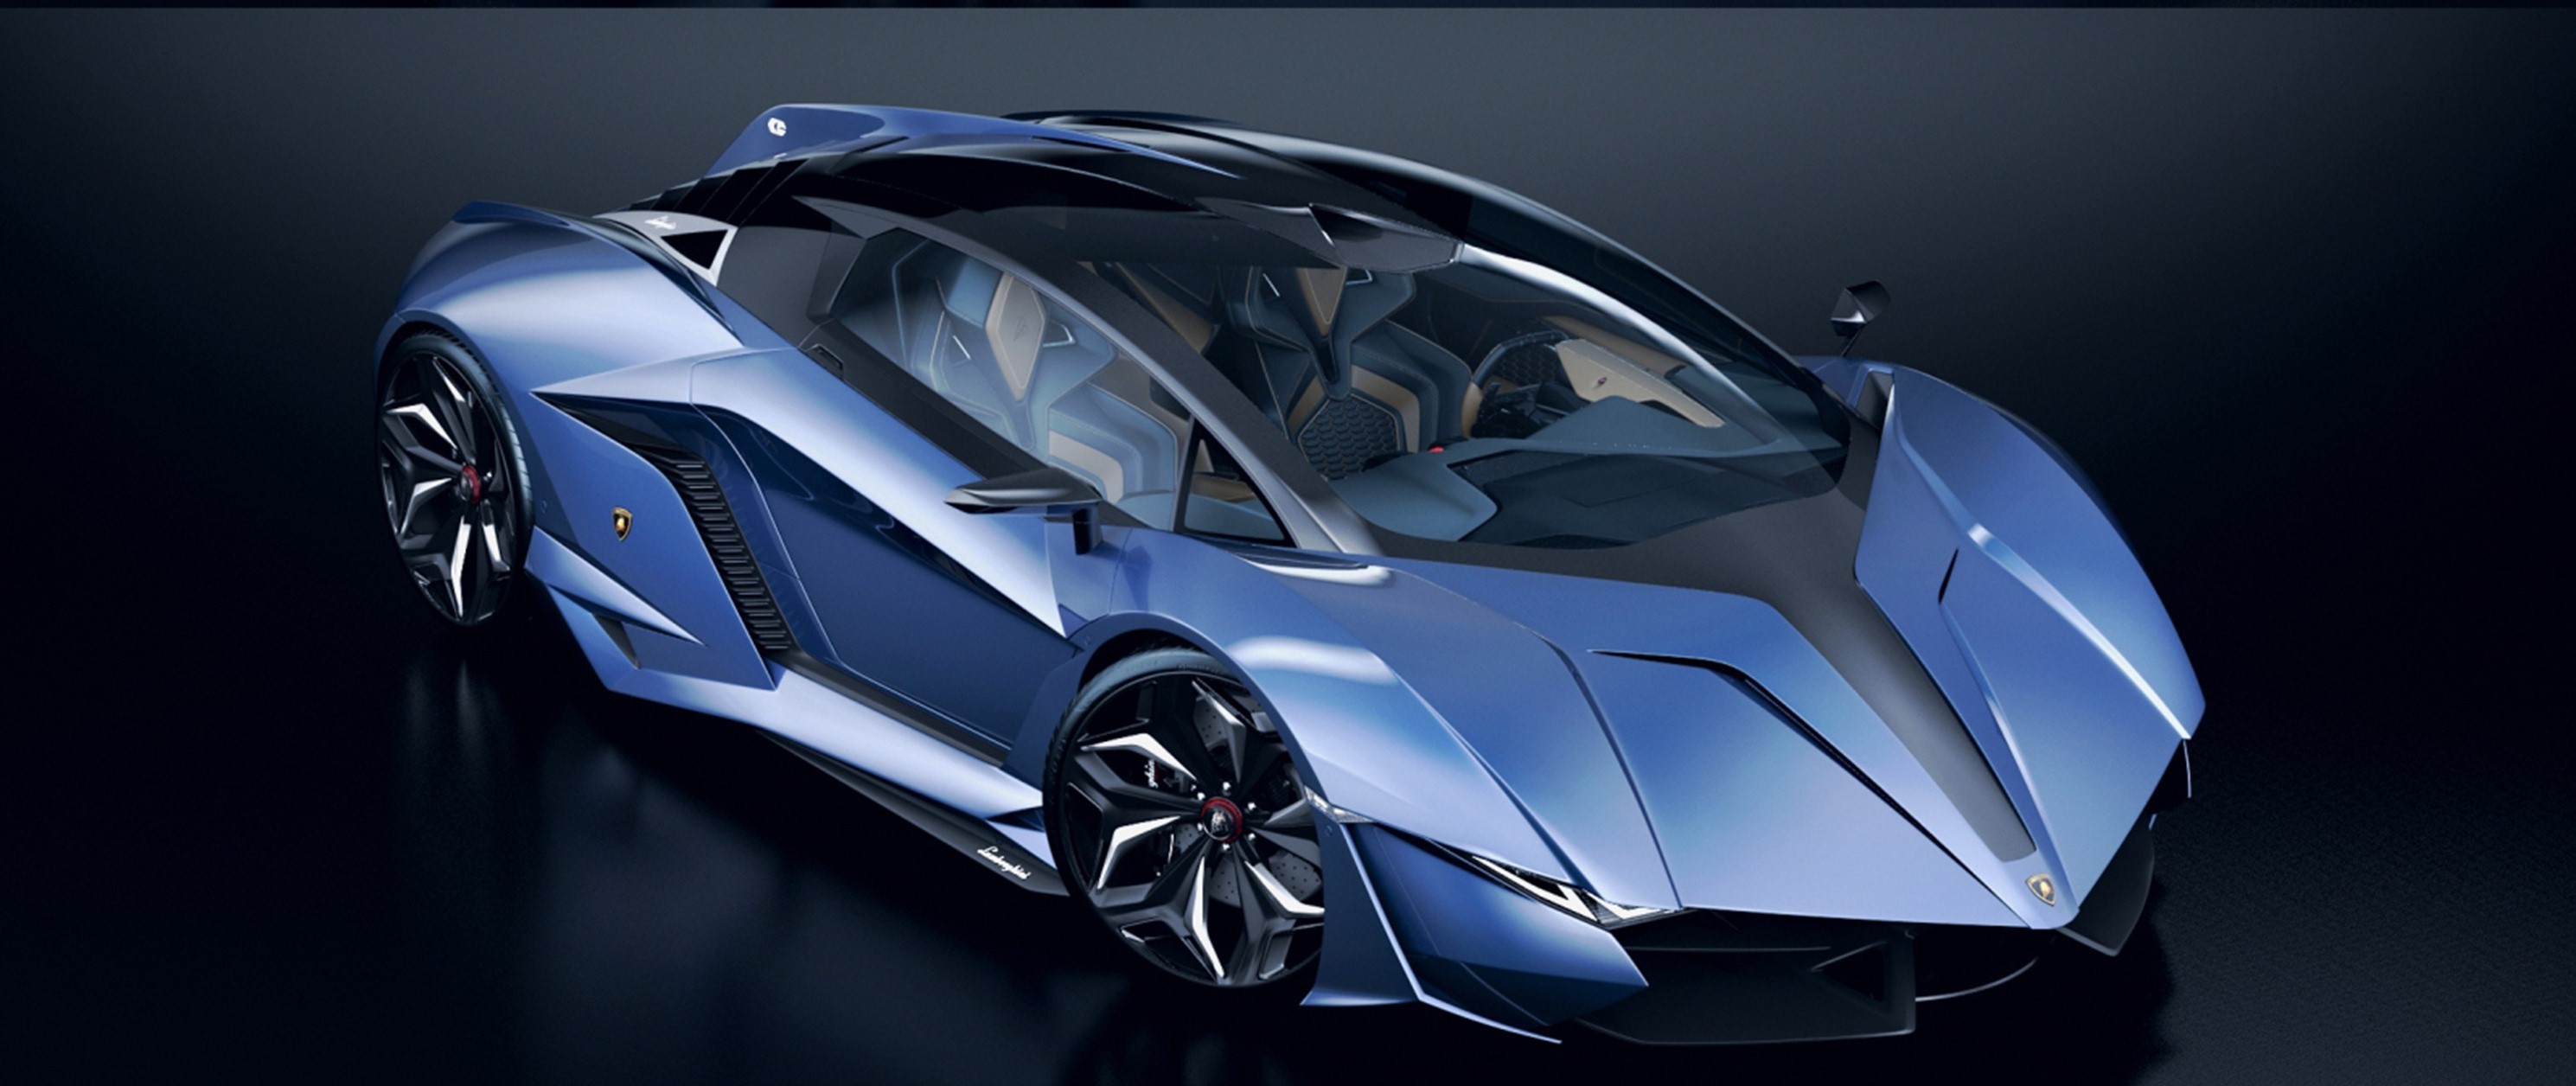 Lamborghini Resonare Concept 2015, Lamborghini, Concept ...